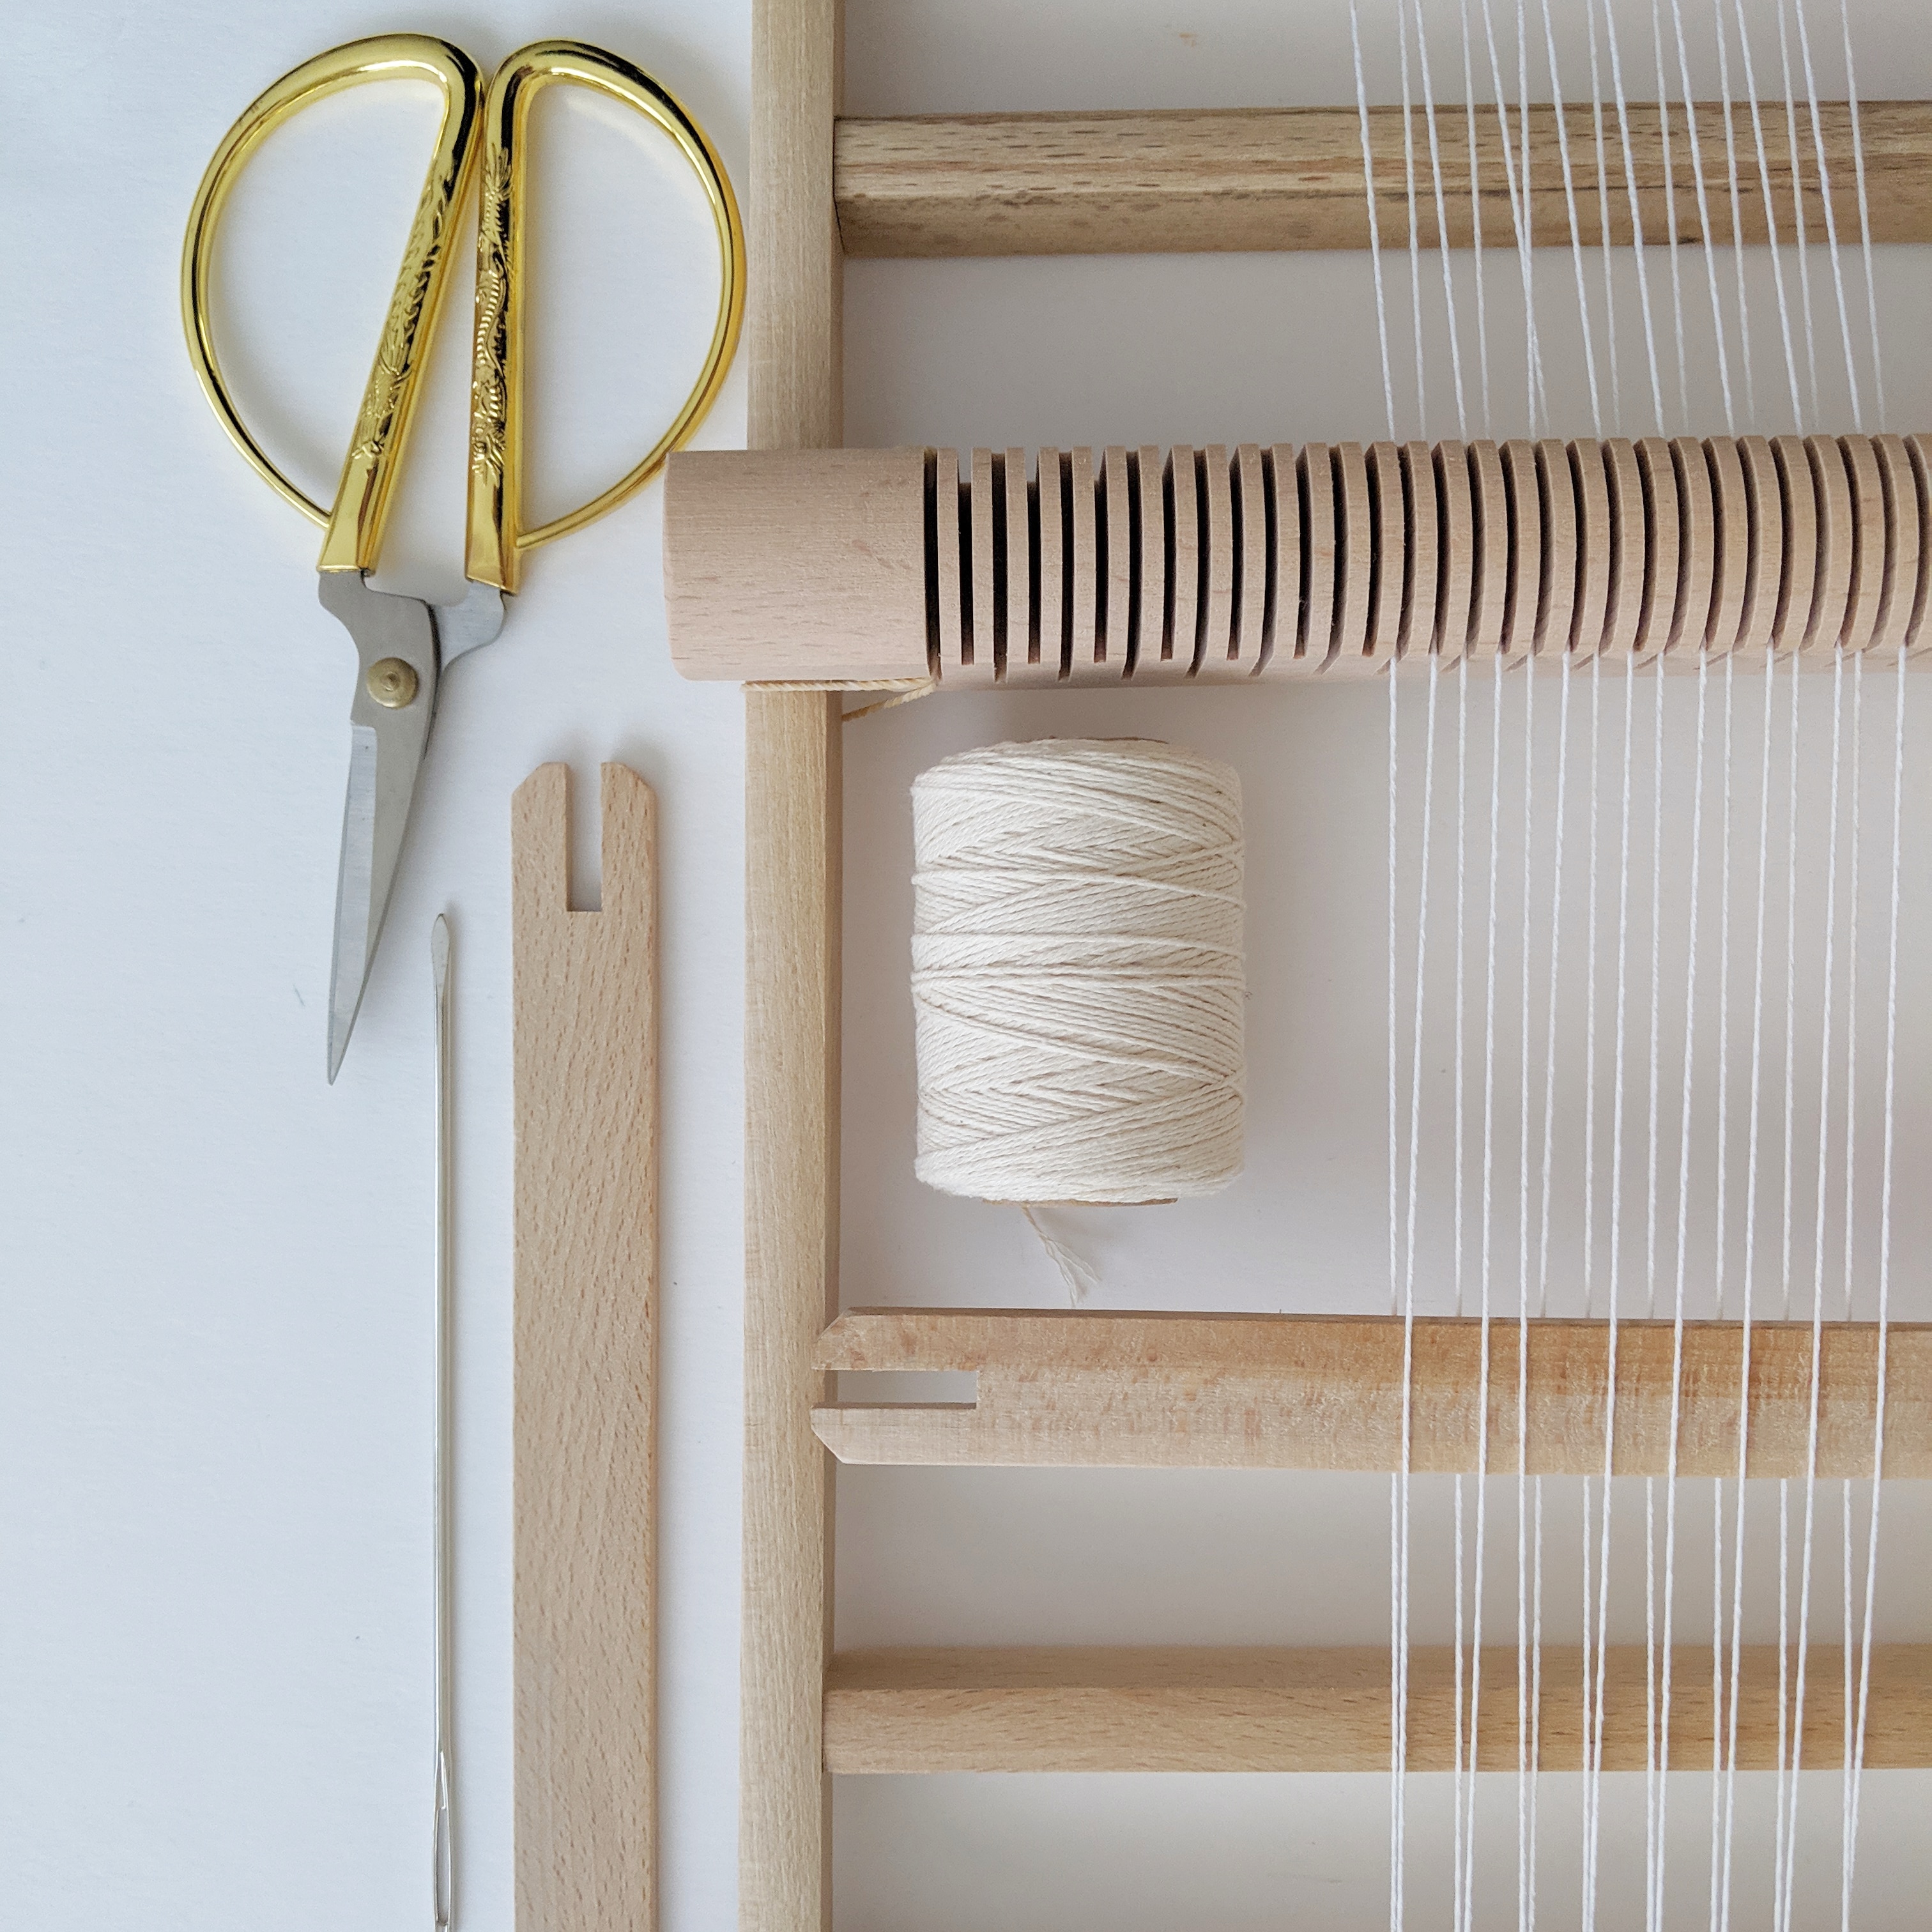 Intro to Wet Felting  Merino Wool Silk Scarf Workshop – San Diego Craft  Collective